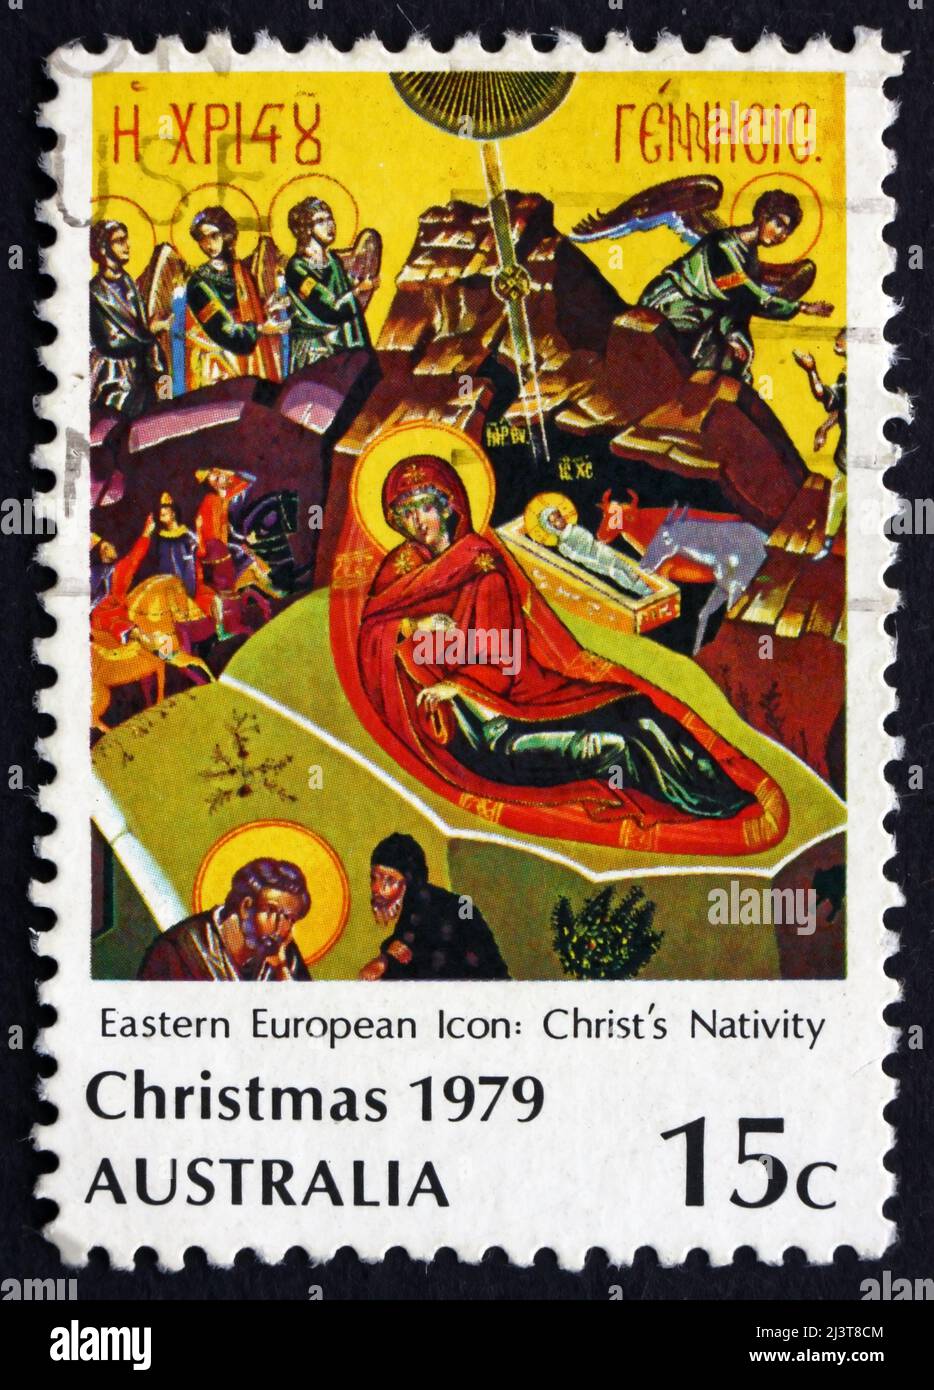 AUSTRALIA - CIRCA 1979: a stamp printed in the Australia shows Eastern European Icon, Nativity, Christmas, circa 1979 Stock Photo